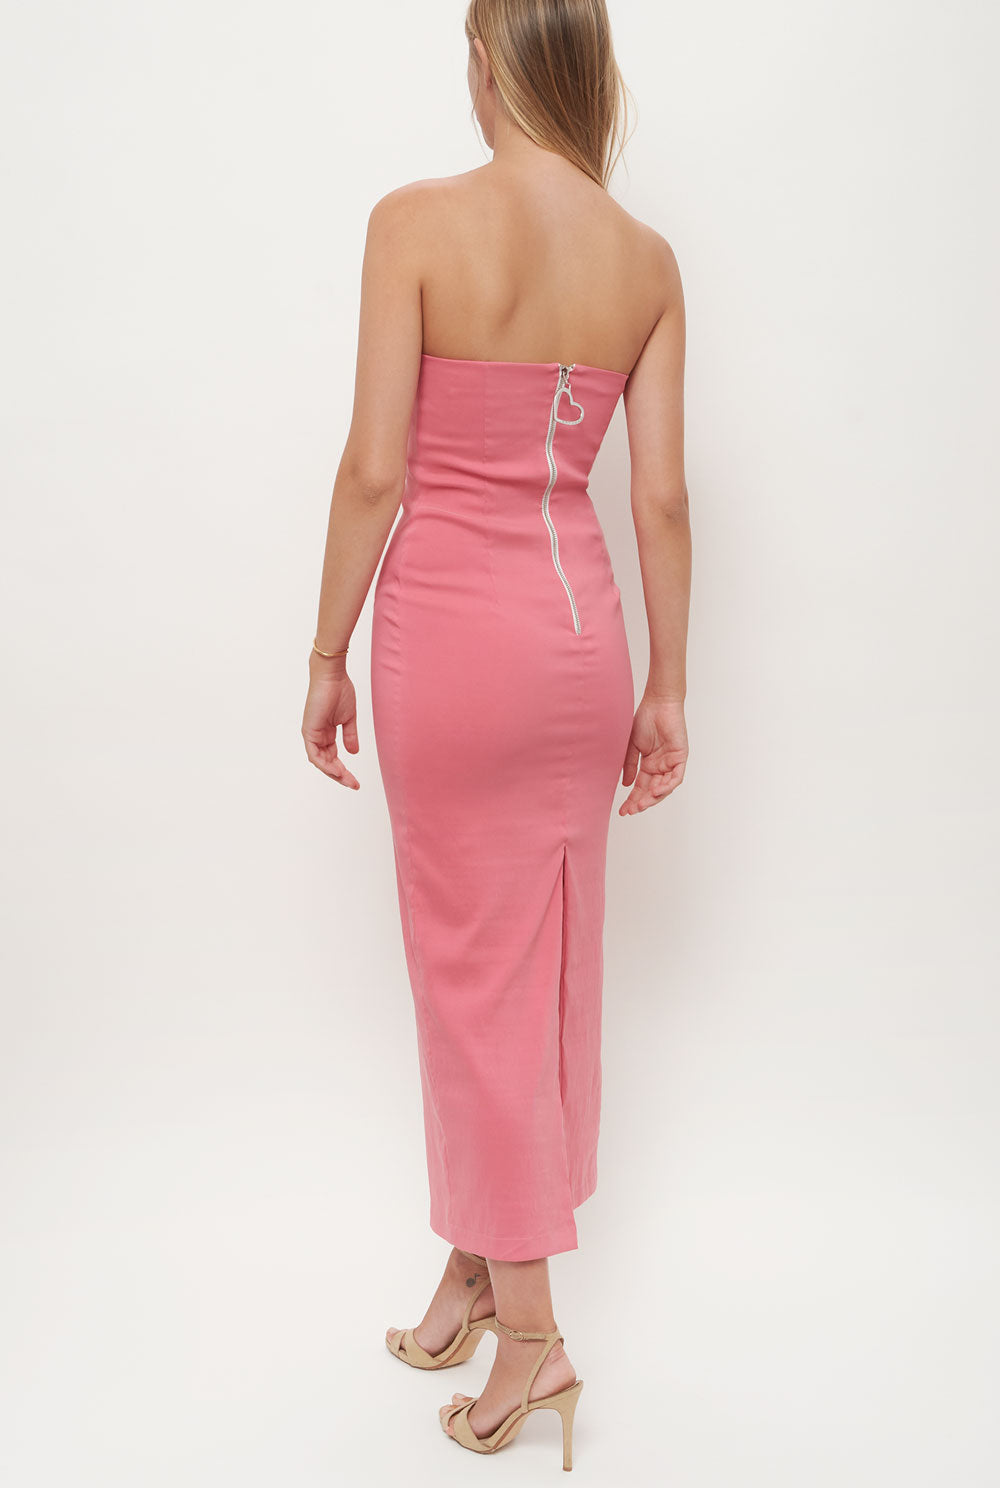 Vestido Midi Ruffle Rose Pink. Pre-Order Dresses Juan Vidal 